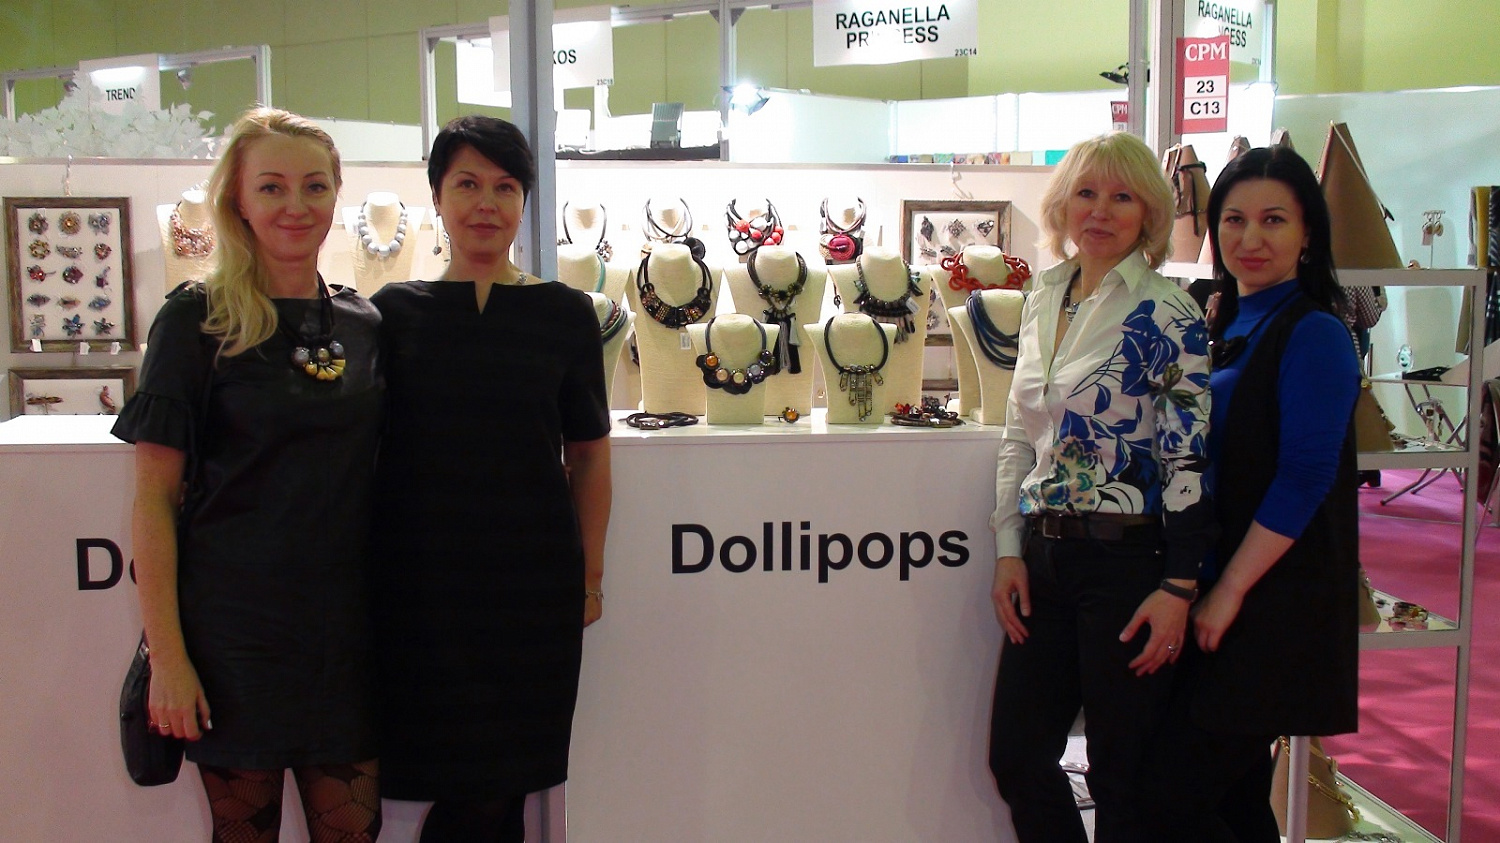 Dollipops на выставках «GIFTS EXPO» и «CPM»